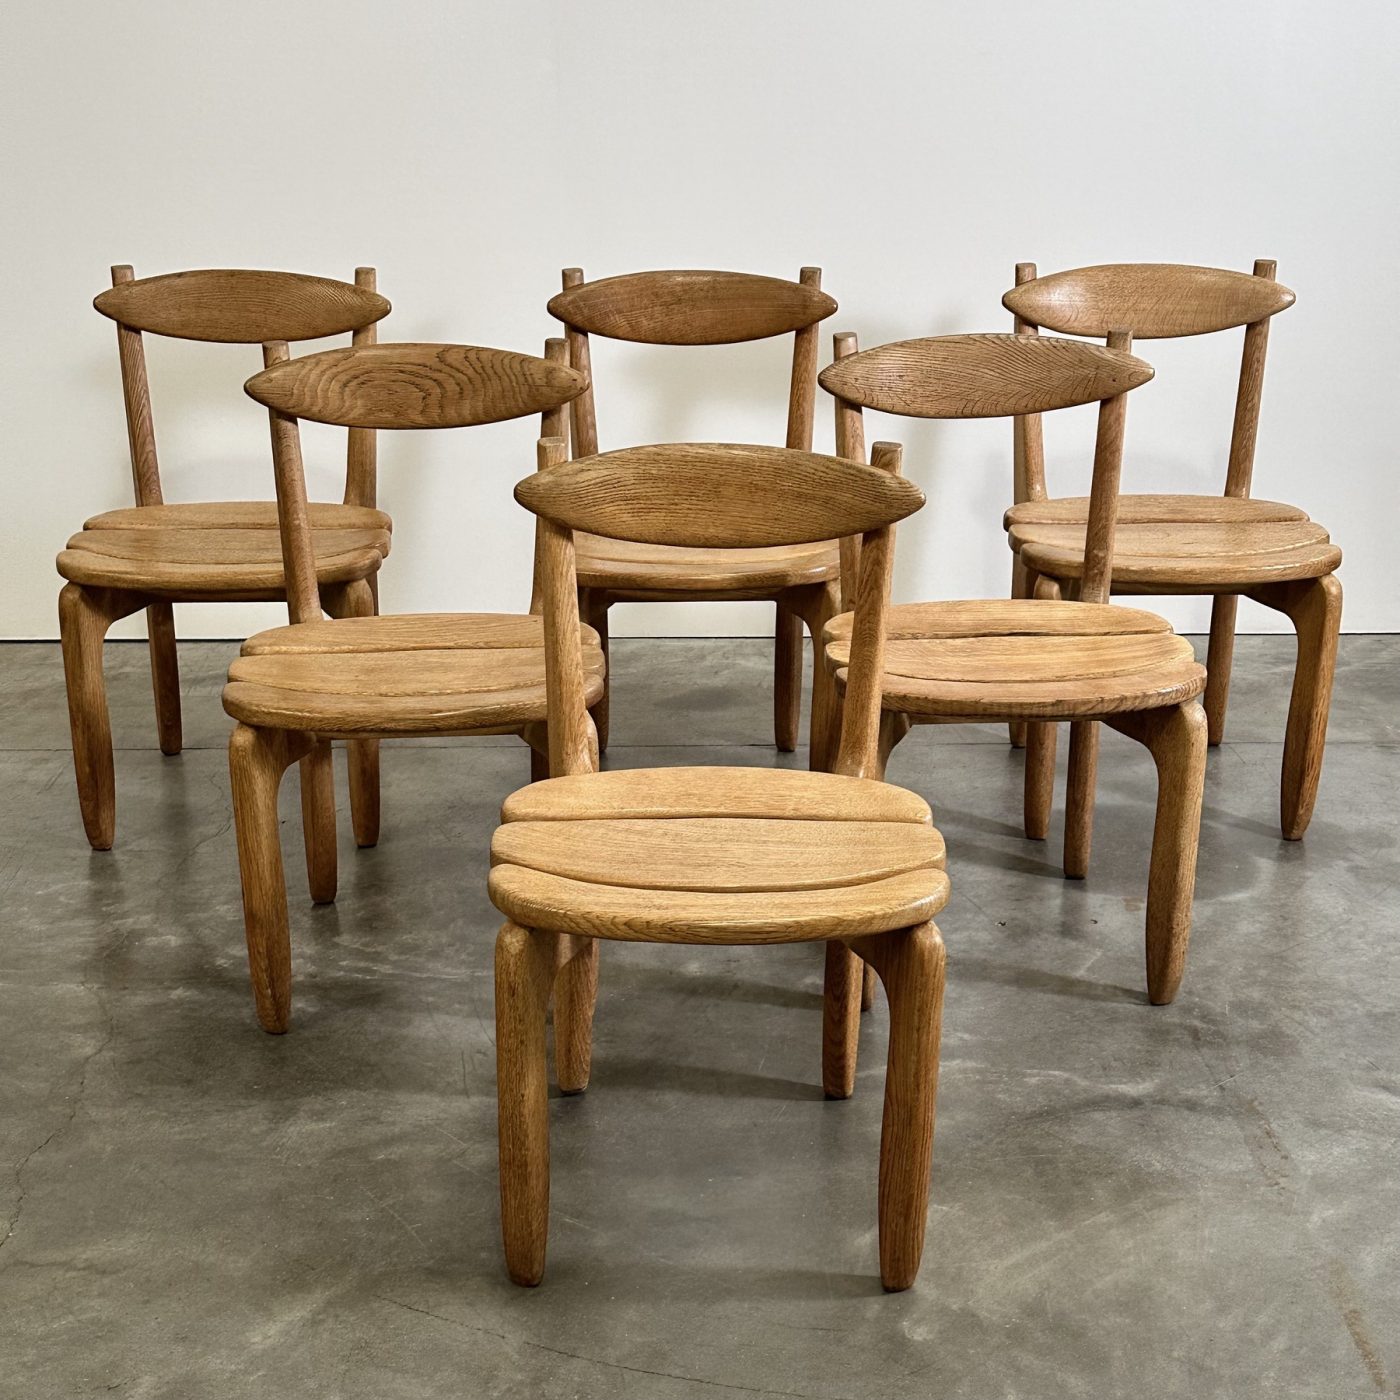 objet-vagabond-guillerme-chairs0005